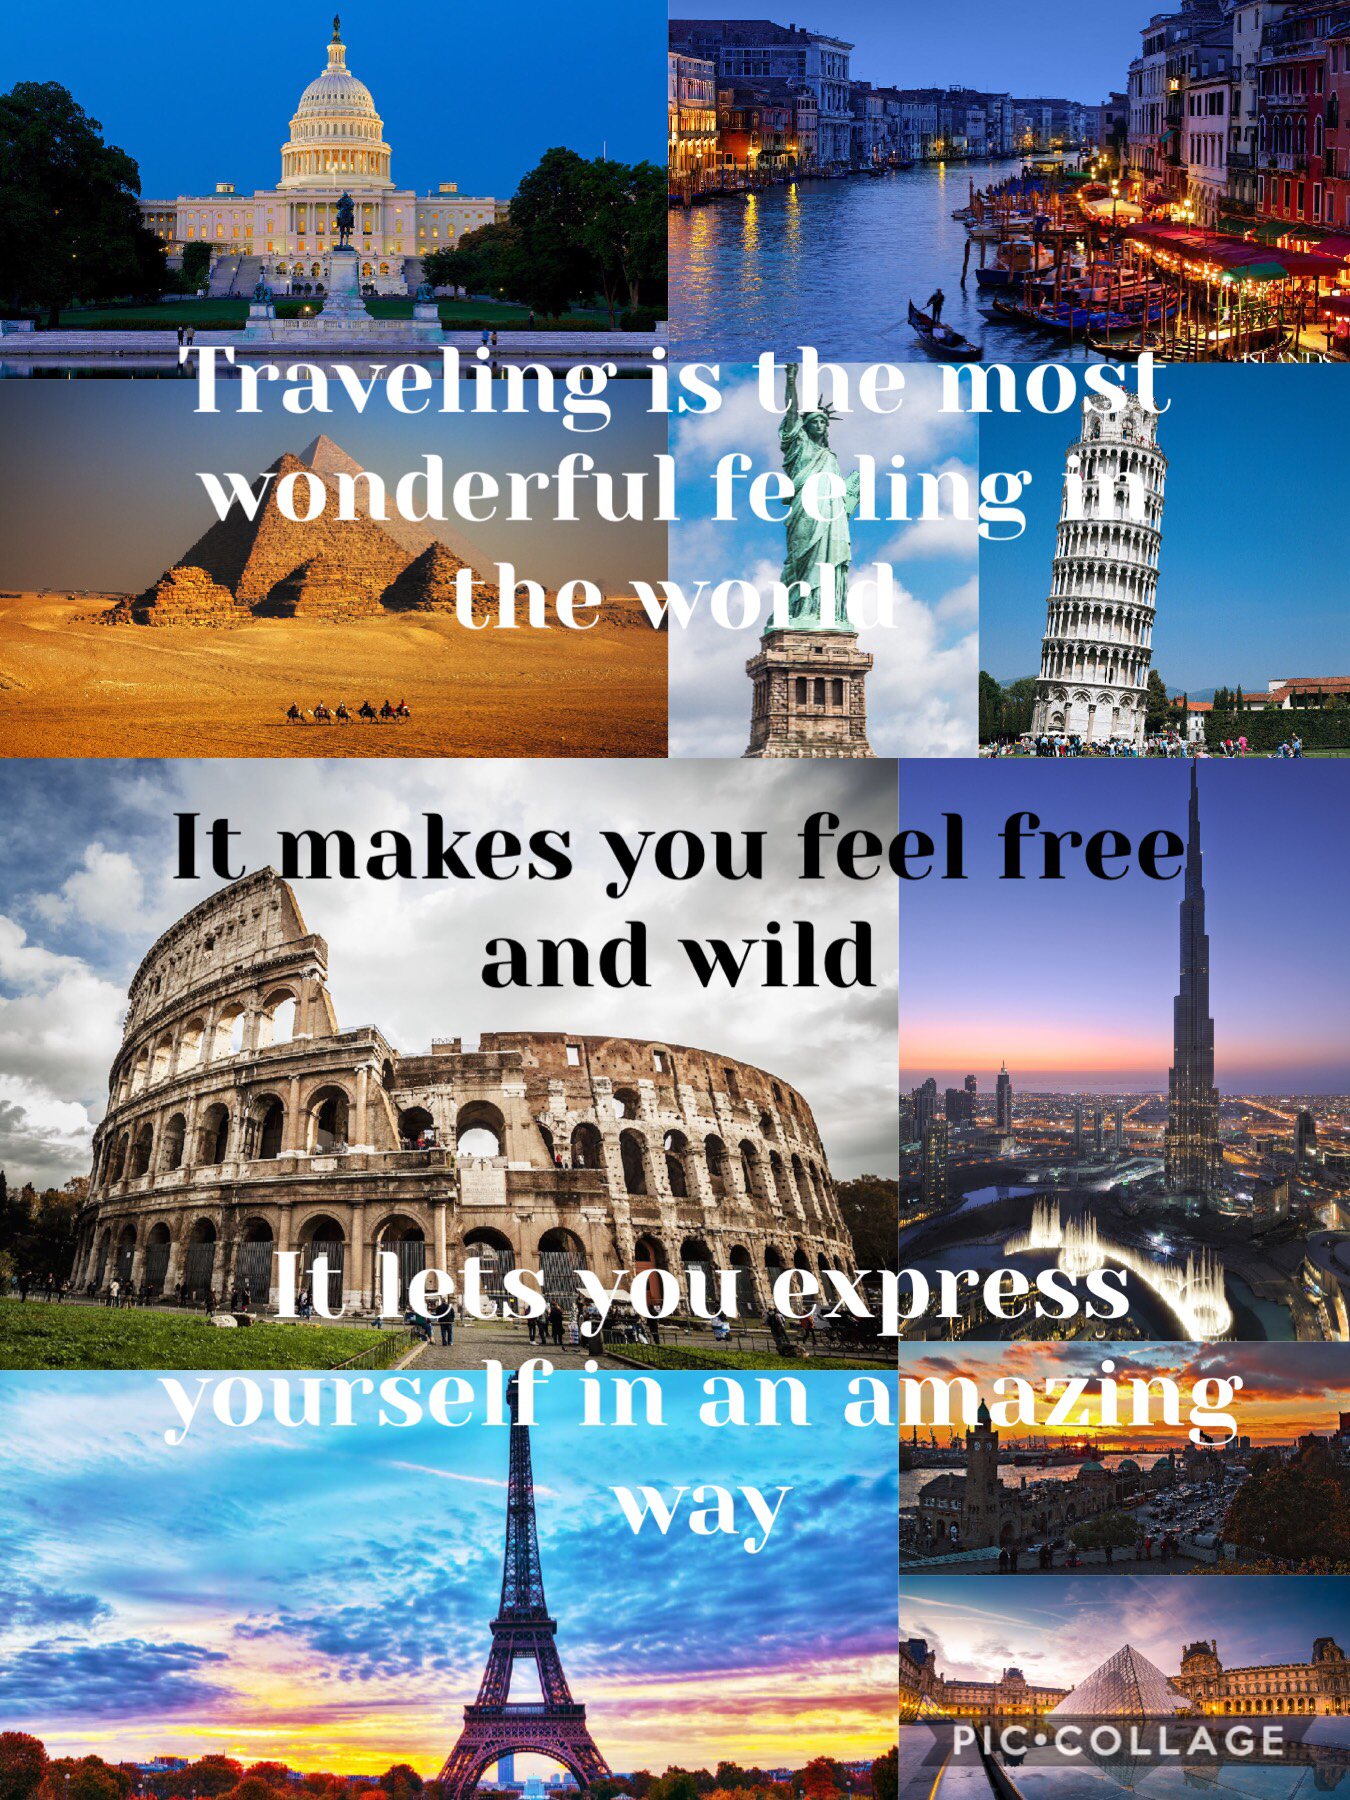 Travel around the world!! 🌎❤️